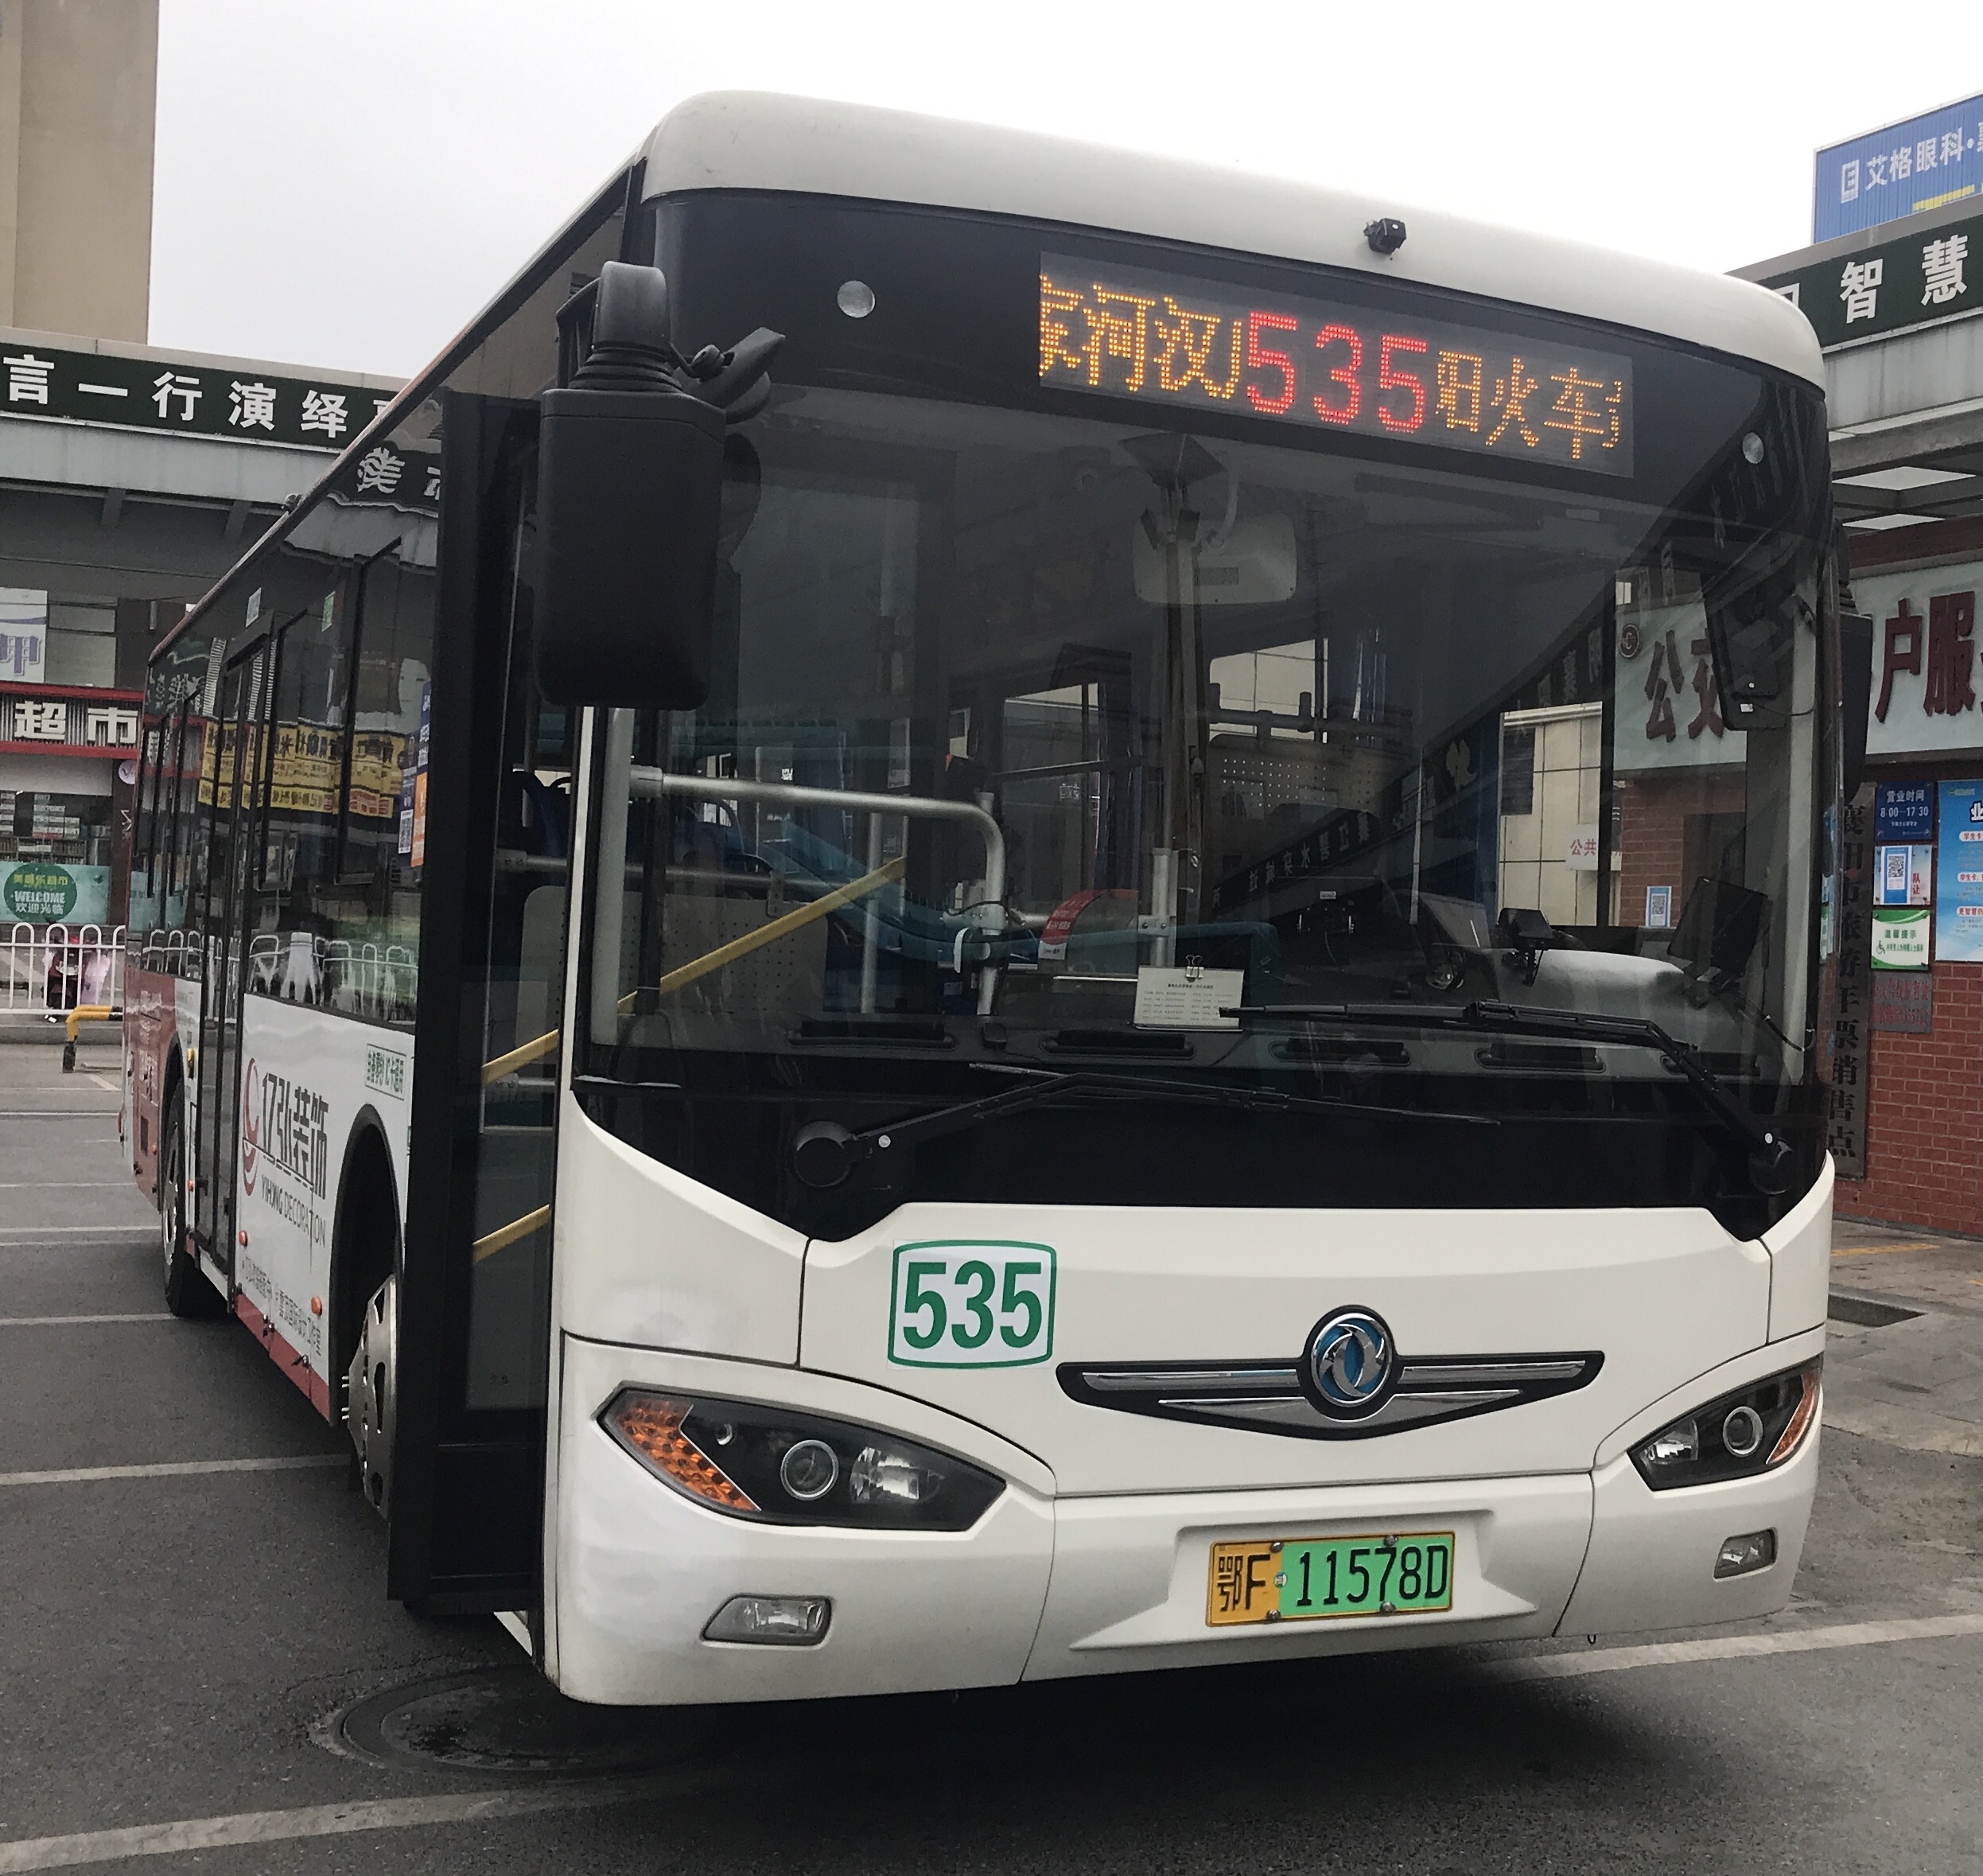 襄阳535路(停运)公交车路线